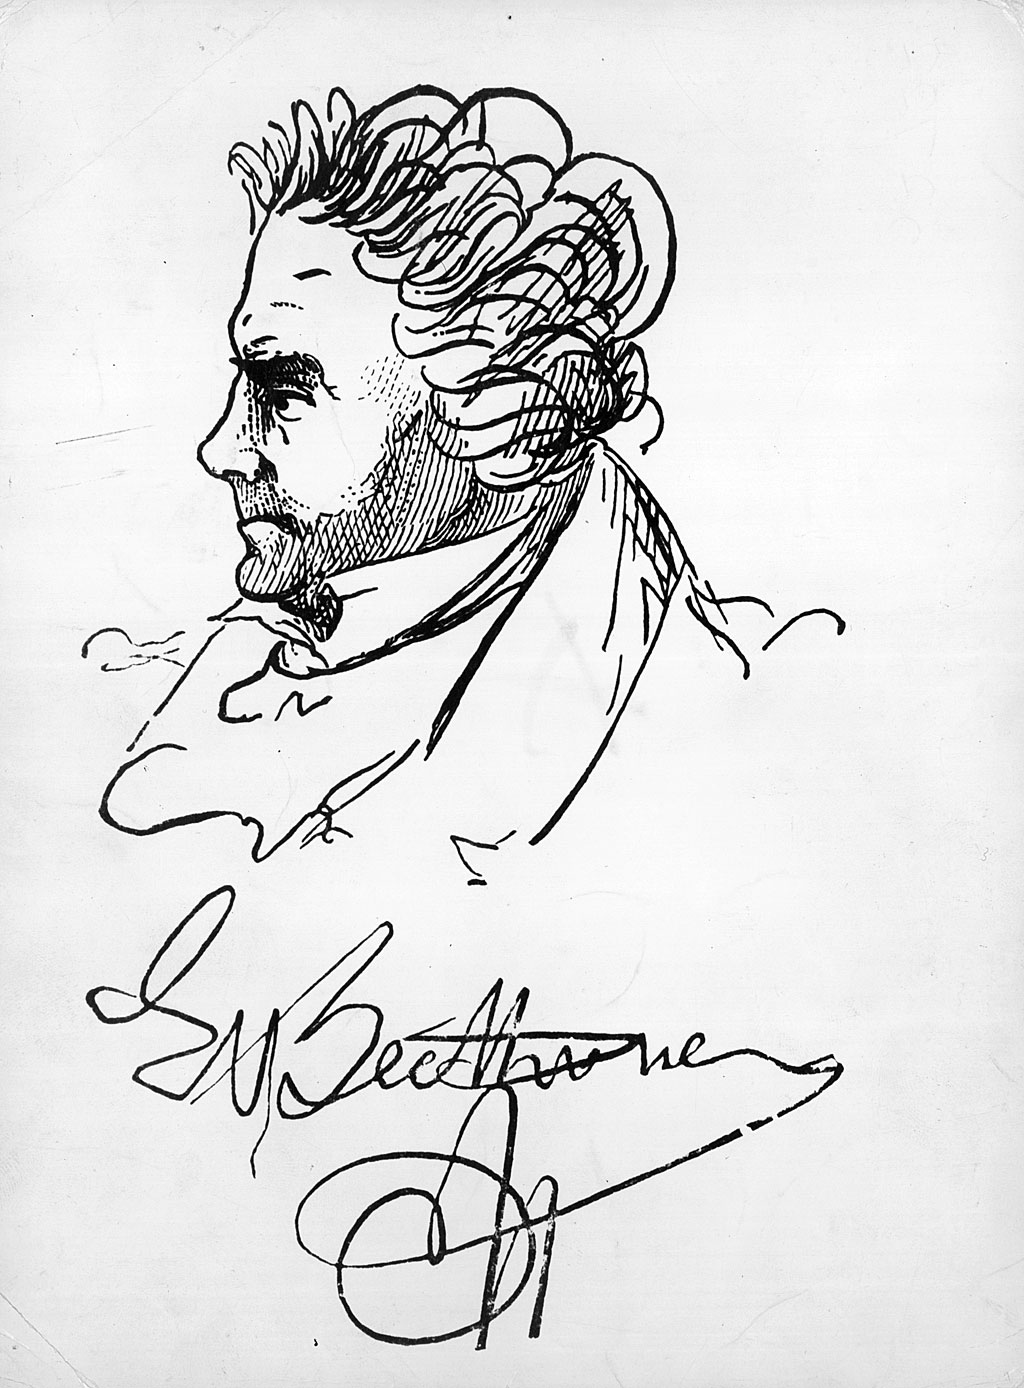 Un retrato autografiado del compositor alemán Ludwig van Beethoven (1770-1827).